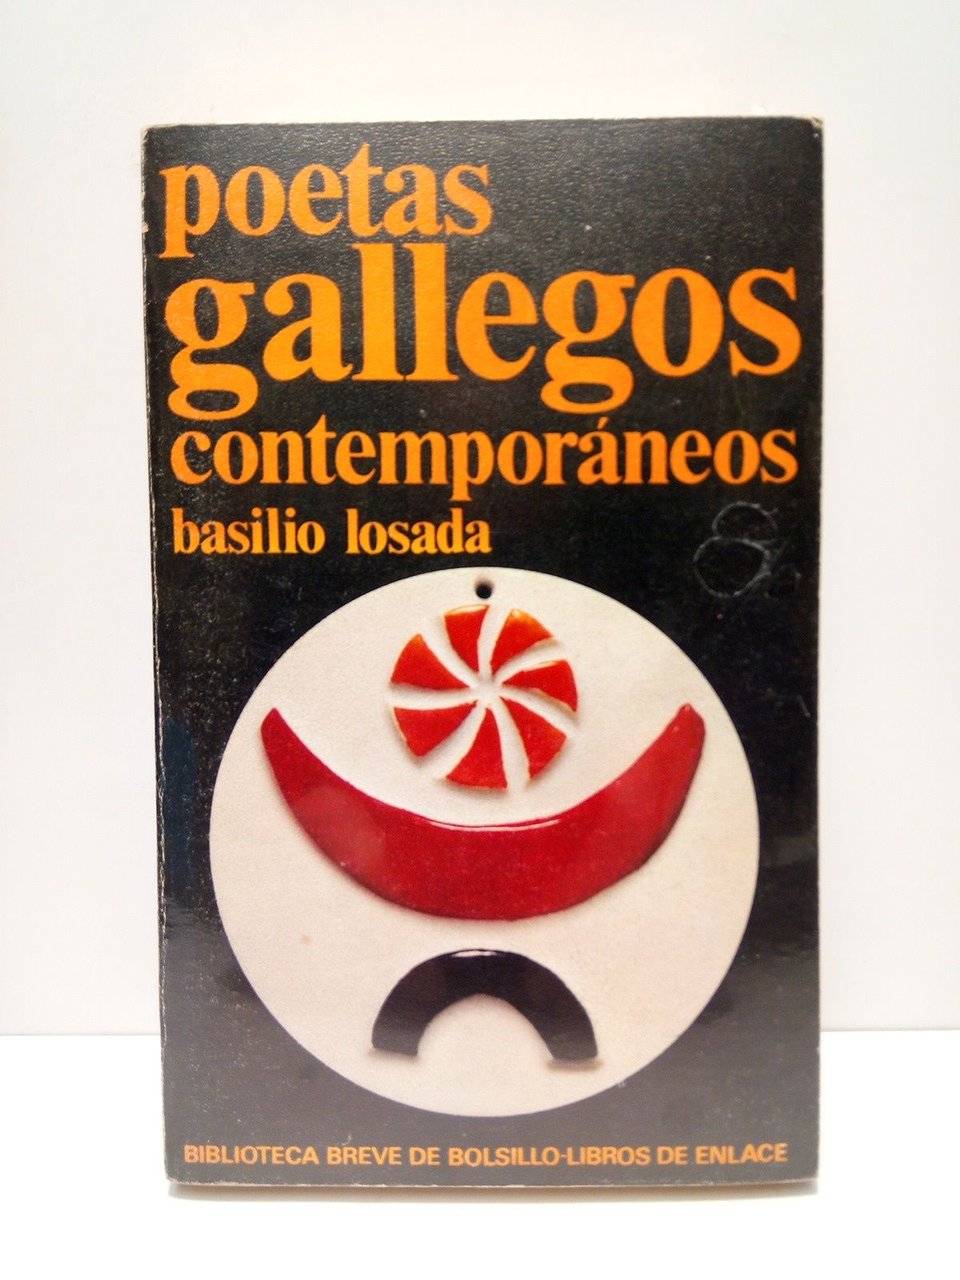 Poetas gallegos contemporáneos